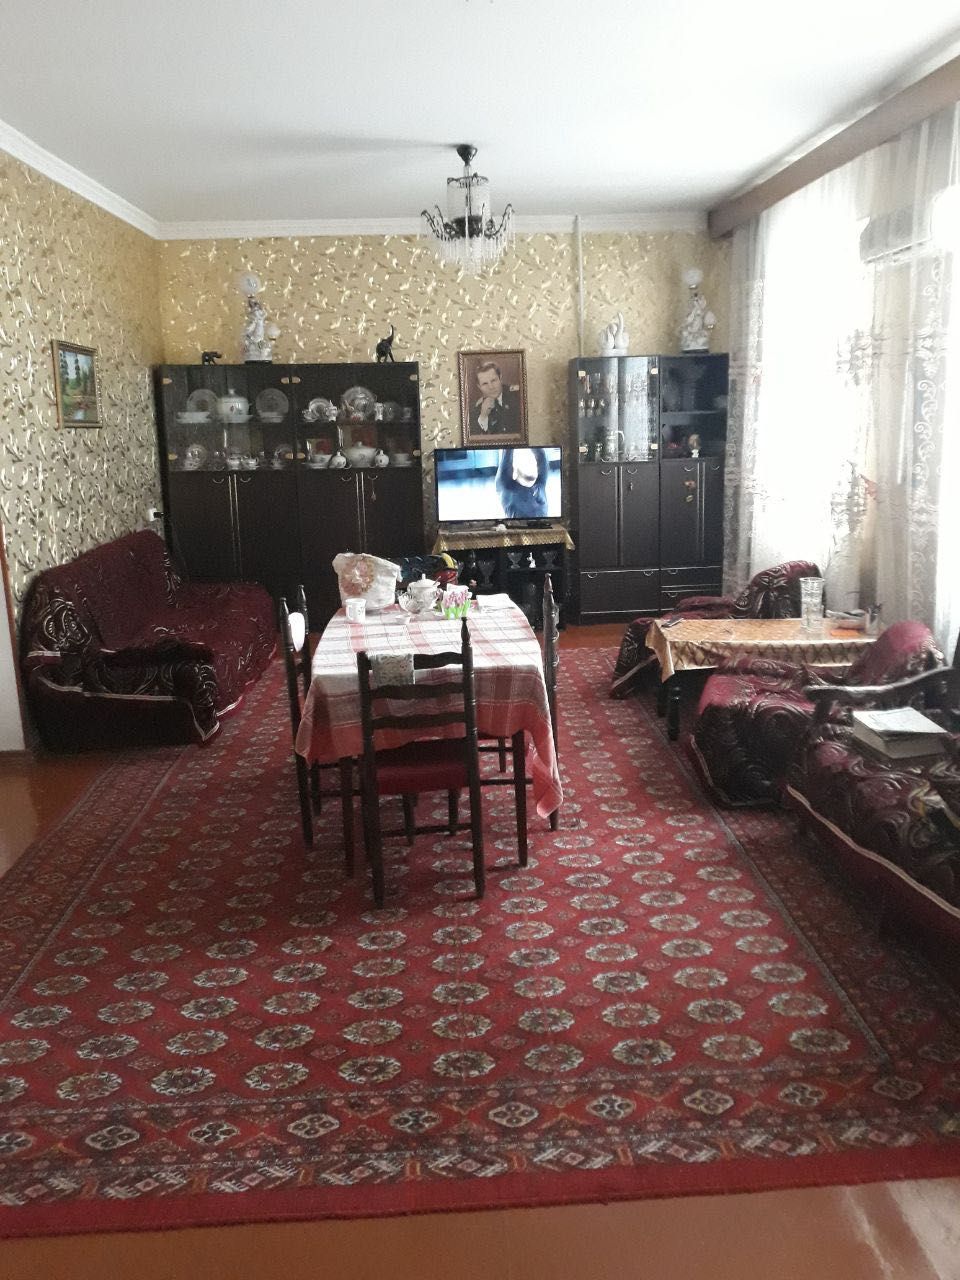 Продается 2-х этажный кирпичный дом от собственника в городе Бухара.